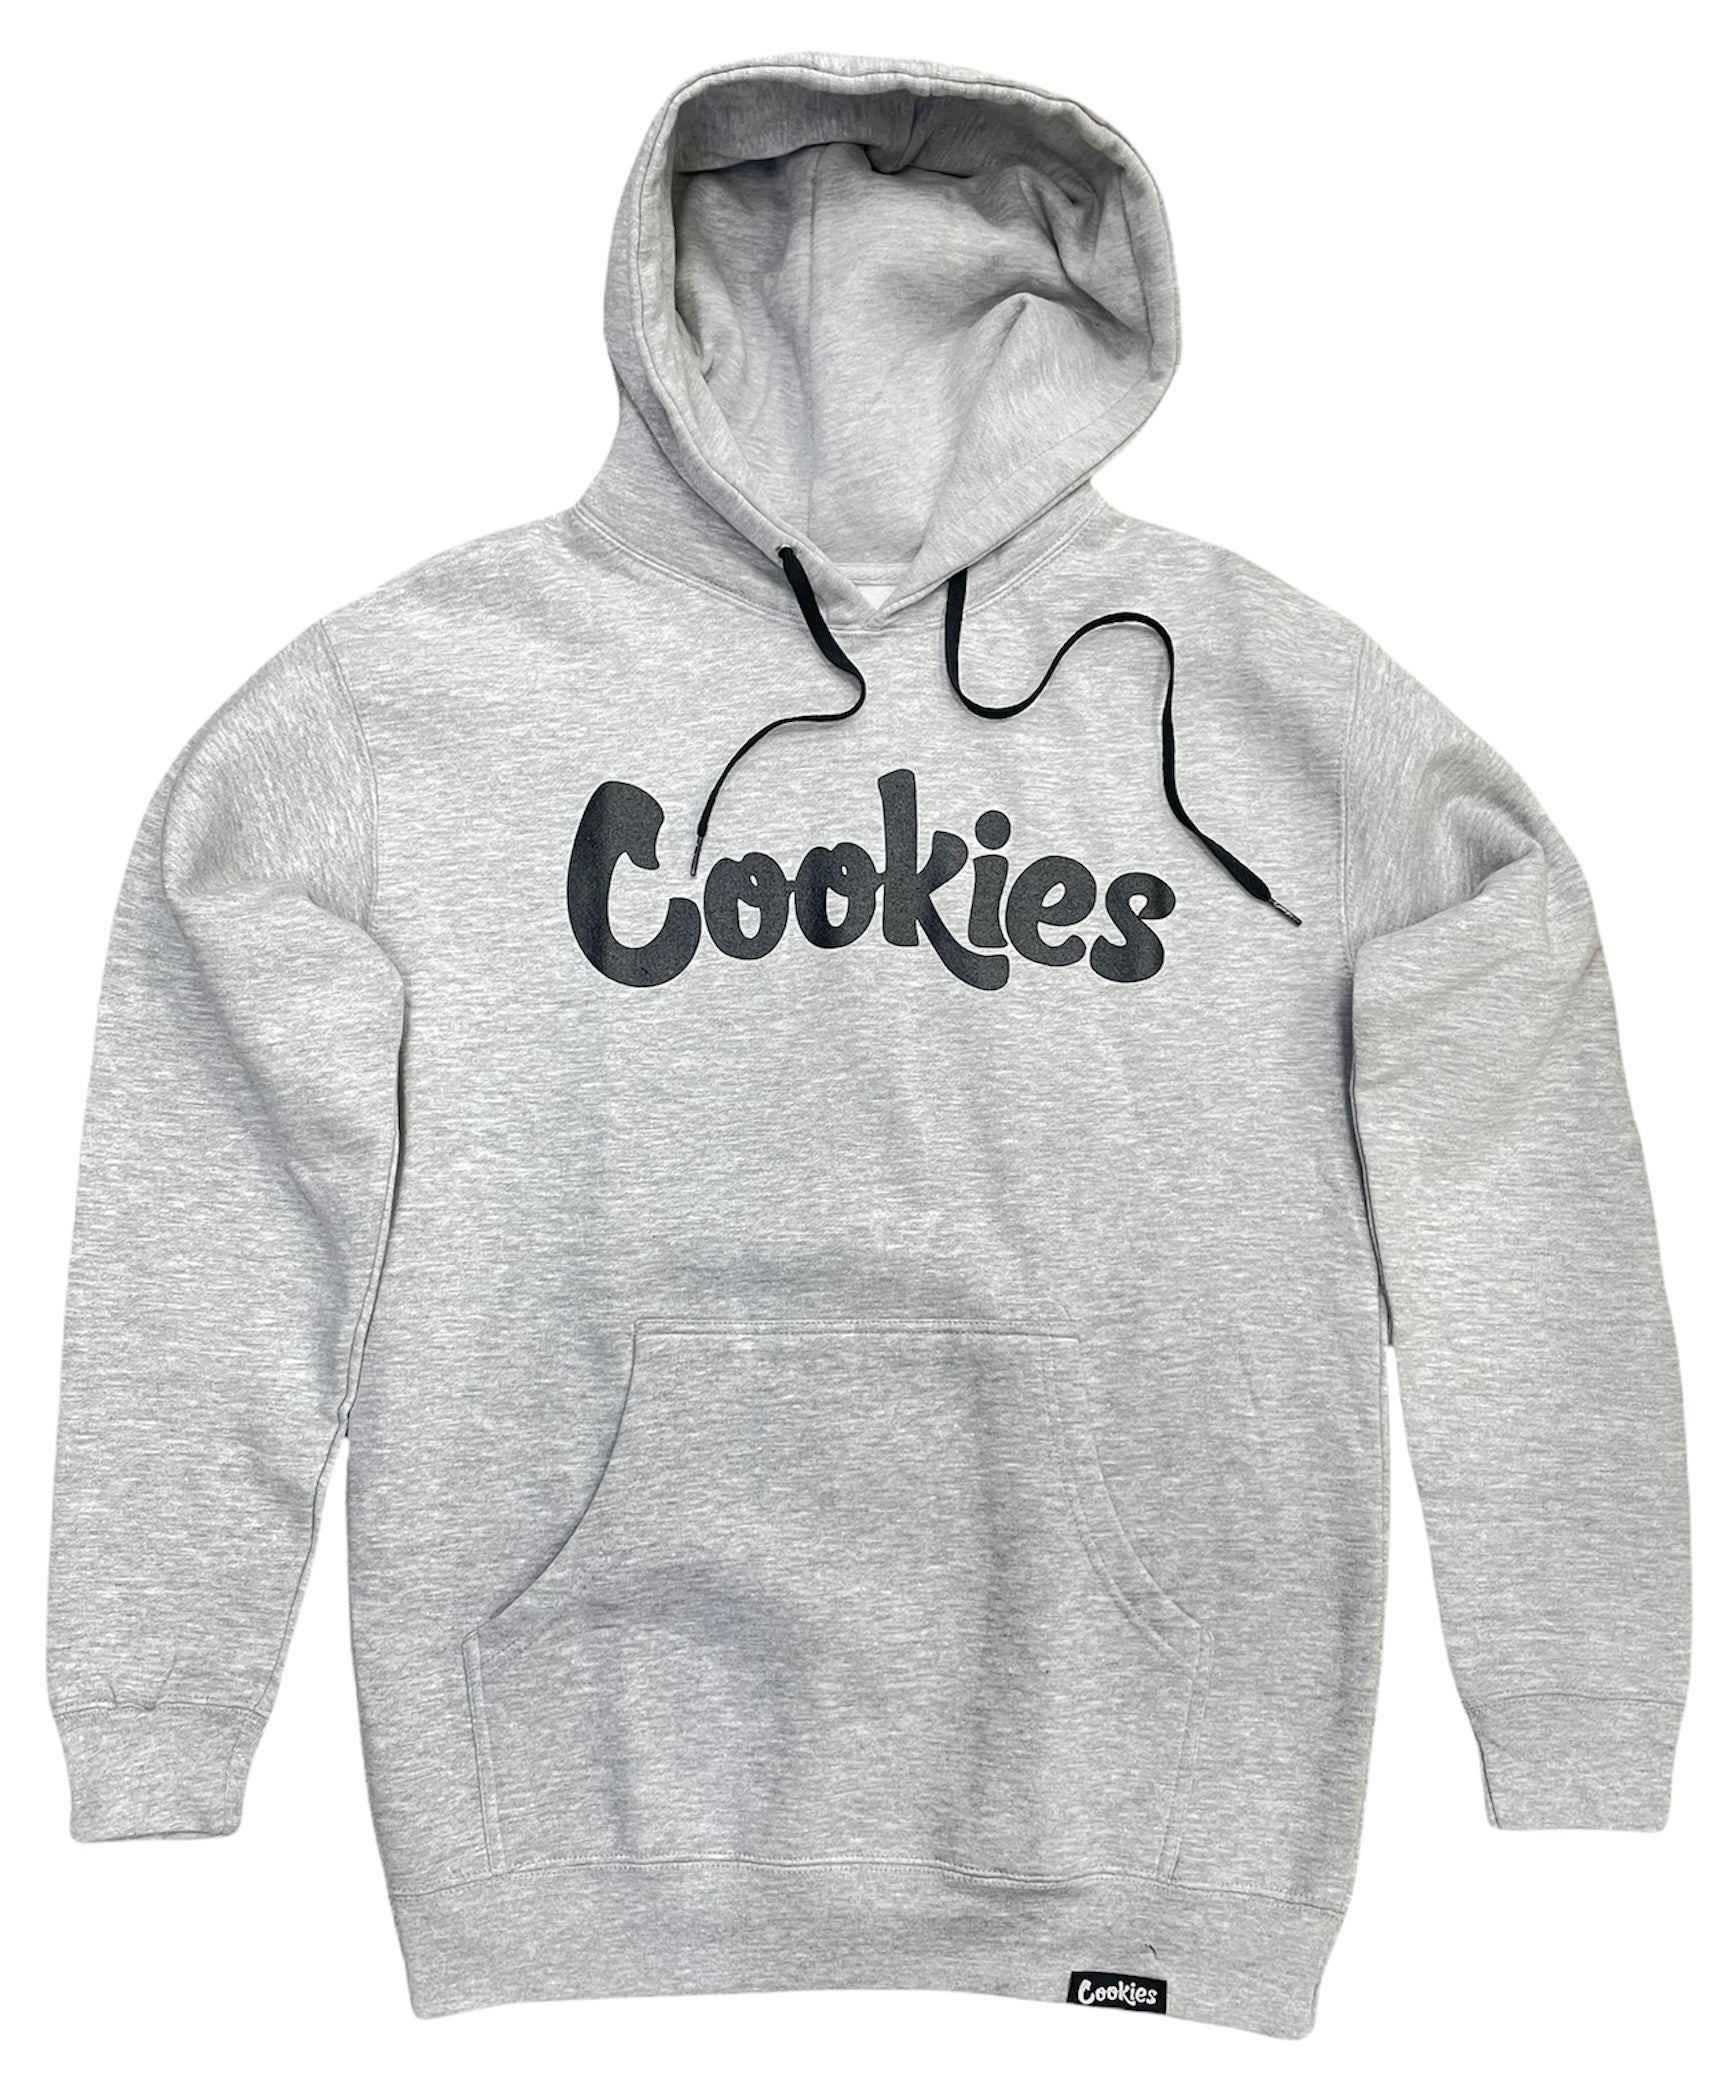 Cookies Original Logo Hoodie